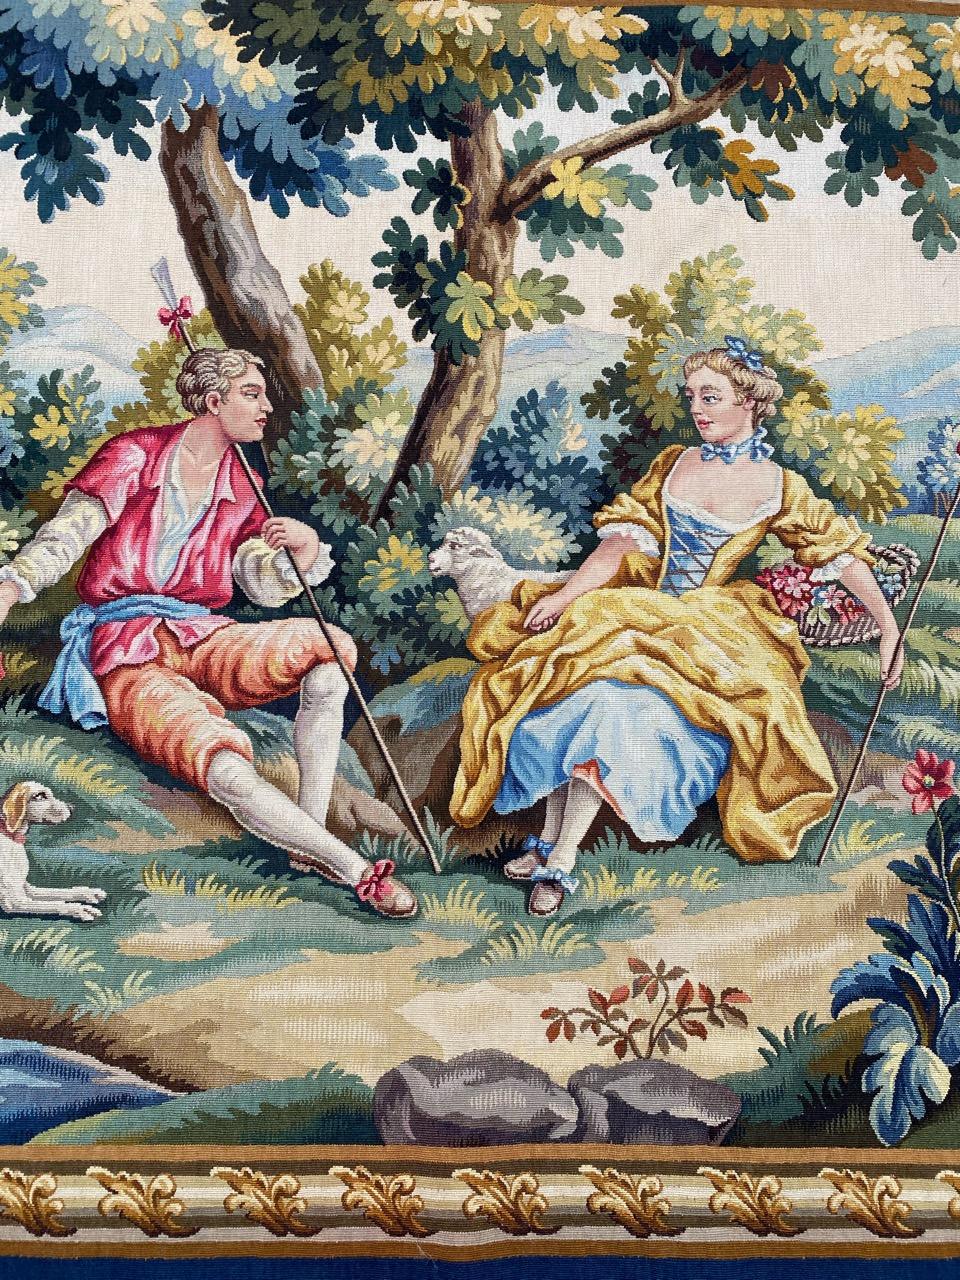 Très belle tapisserie d'Aubusson française du milieu du siècle avec un beau design galant et de belles couleurs, entièrement tissée à la main à la manufacture d'Aubusson avec de la laine et de la soie.

✨✨✨
